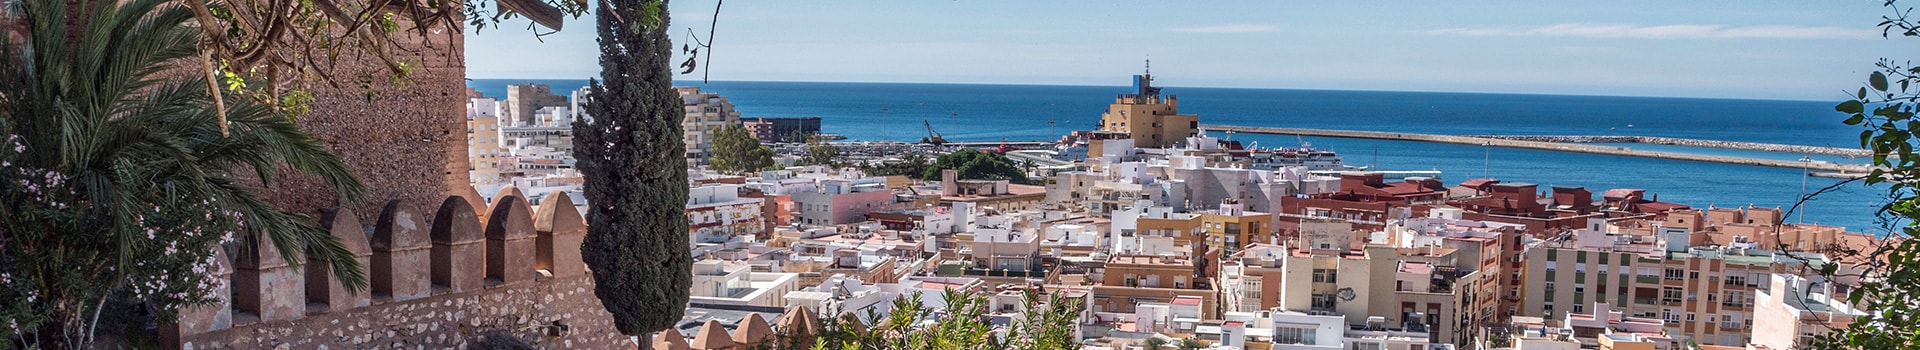 Melilla - Almería